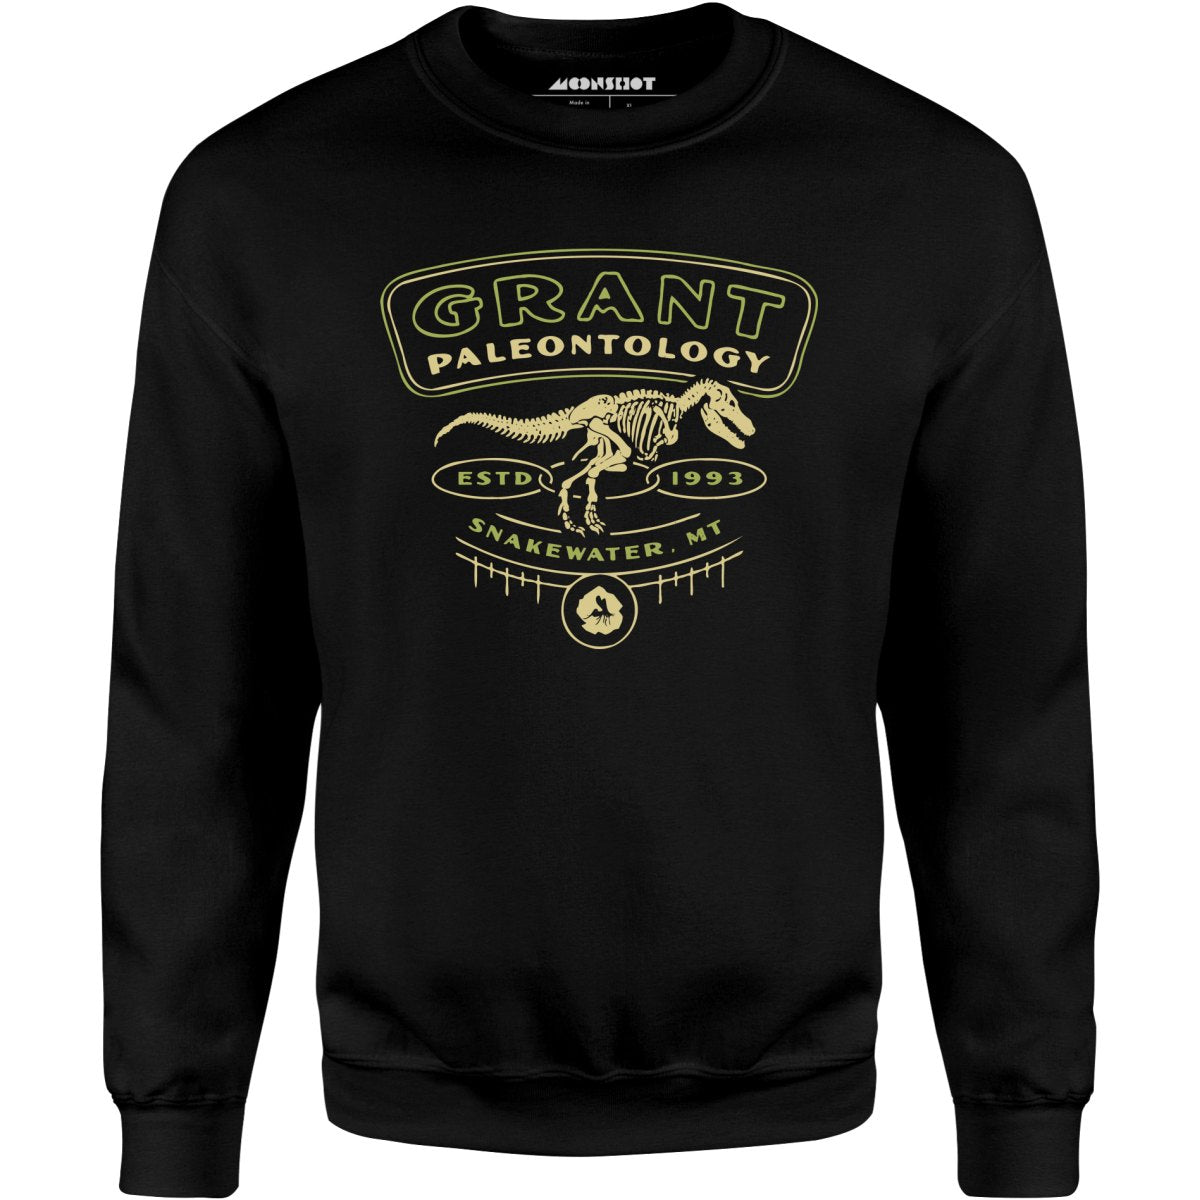 Grant Paleontology - Unisex Sweatshirt